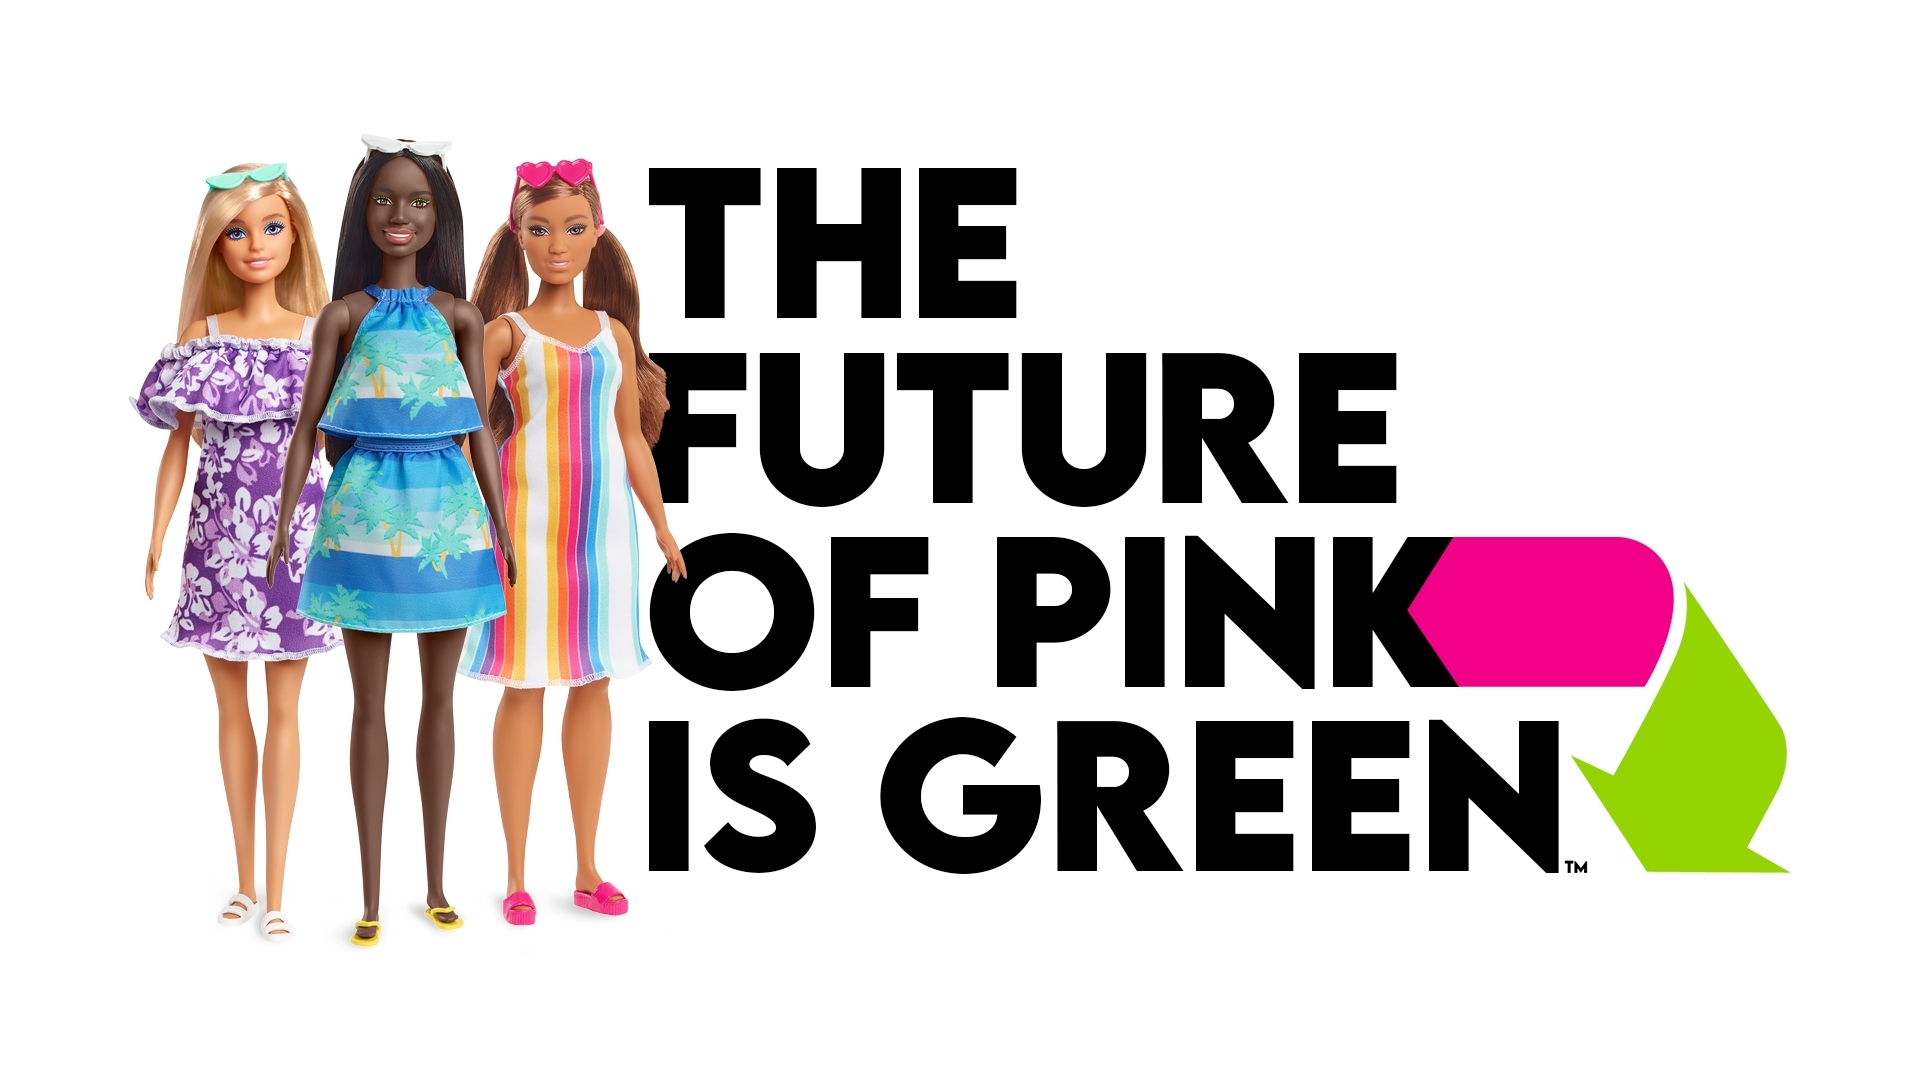 Barbie Fashionistas: Mattel Launches Diverse Barbie Dolls